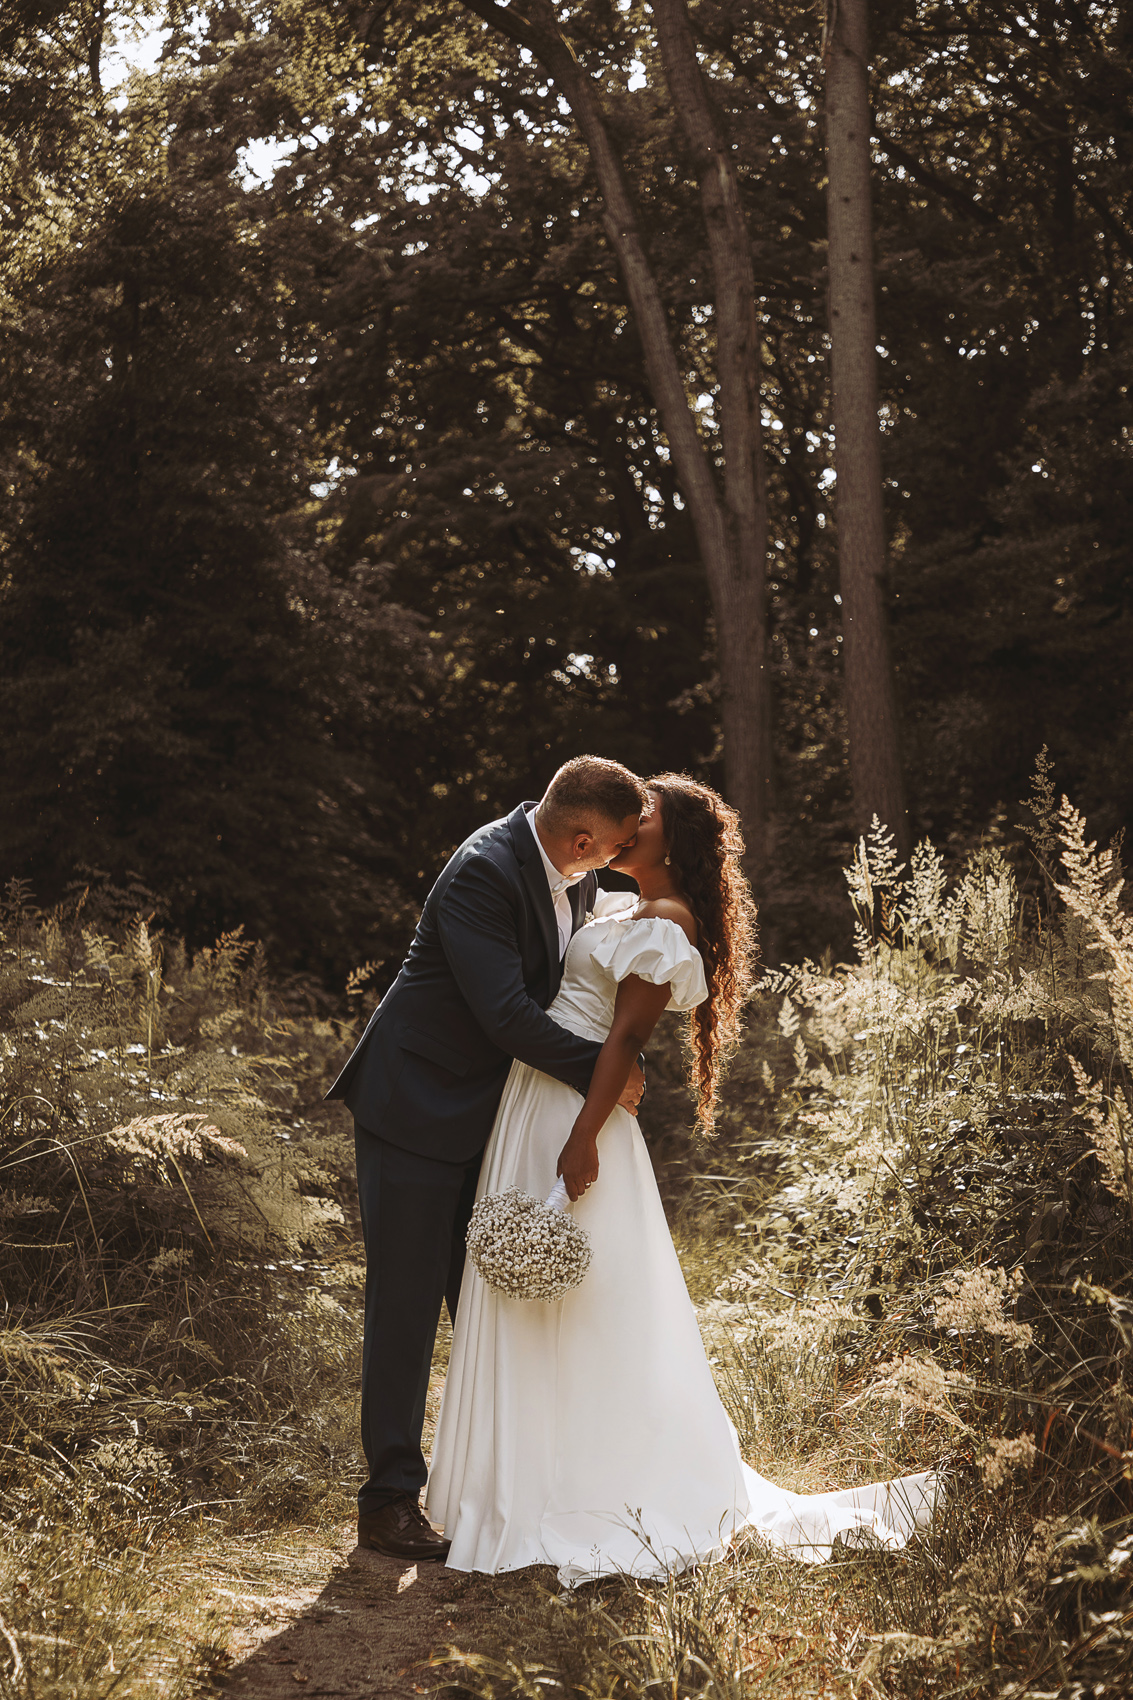 Svadba Šaštín-Stráže, romantika, láska, svadobné fotenie